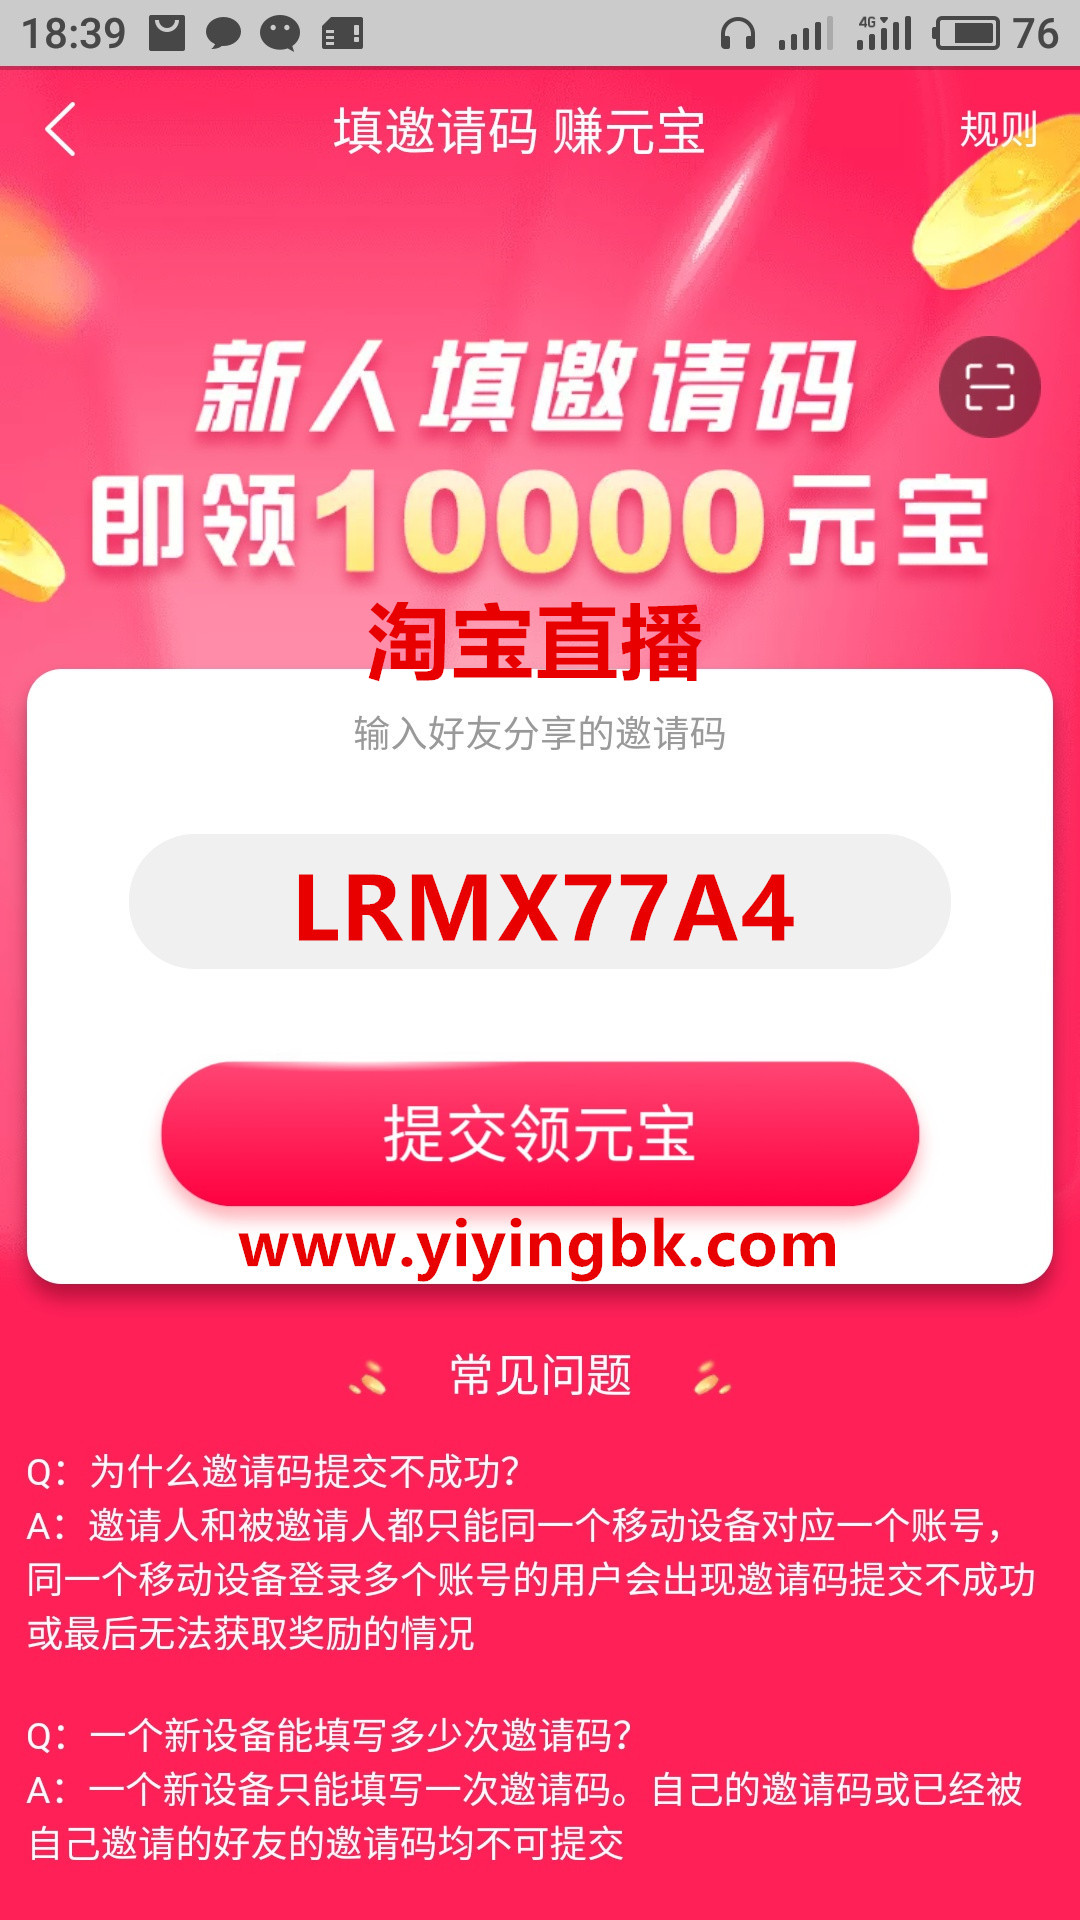 淘宝直播红包邀请码LRMX77A4，免费领取1元红包。www.yiyingbk.com